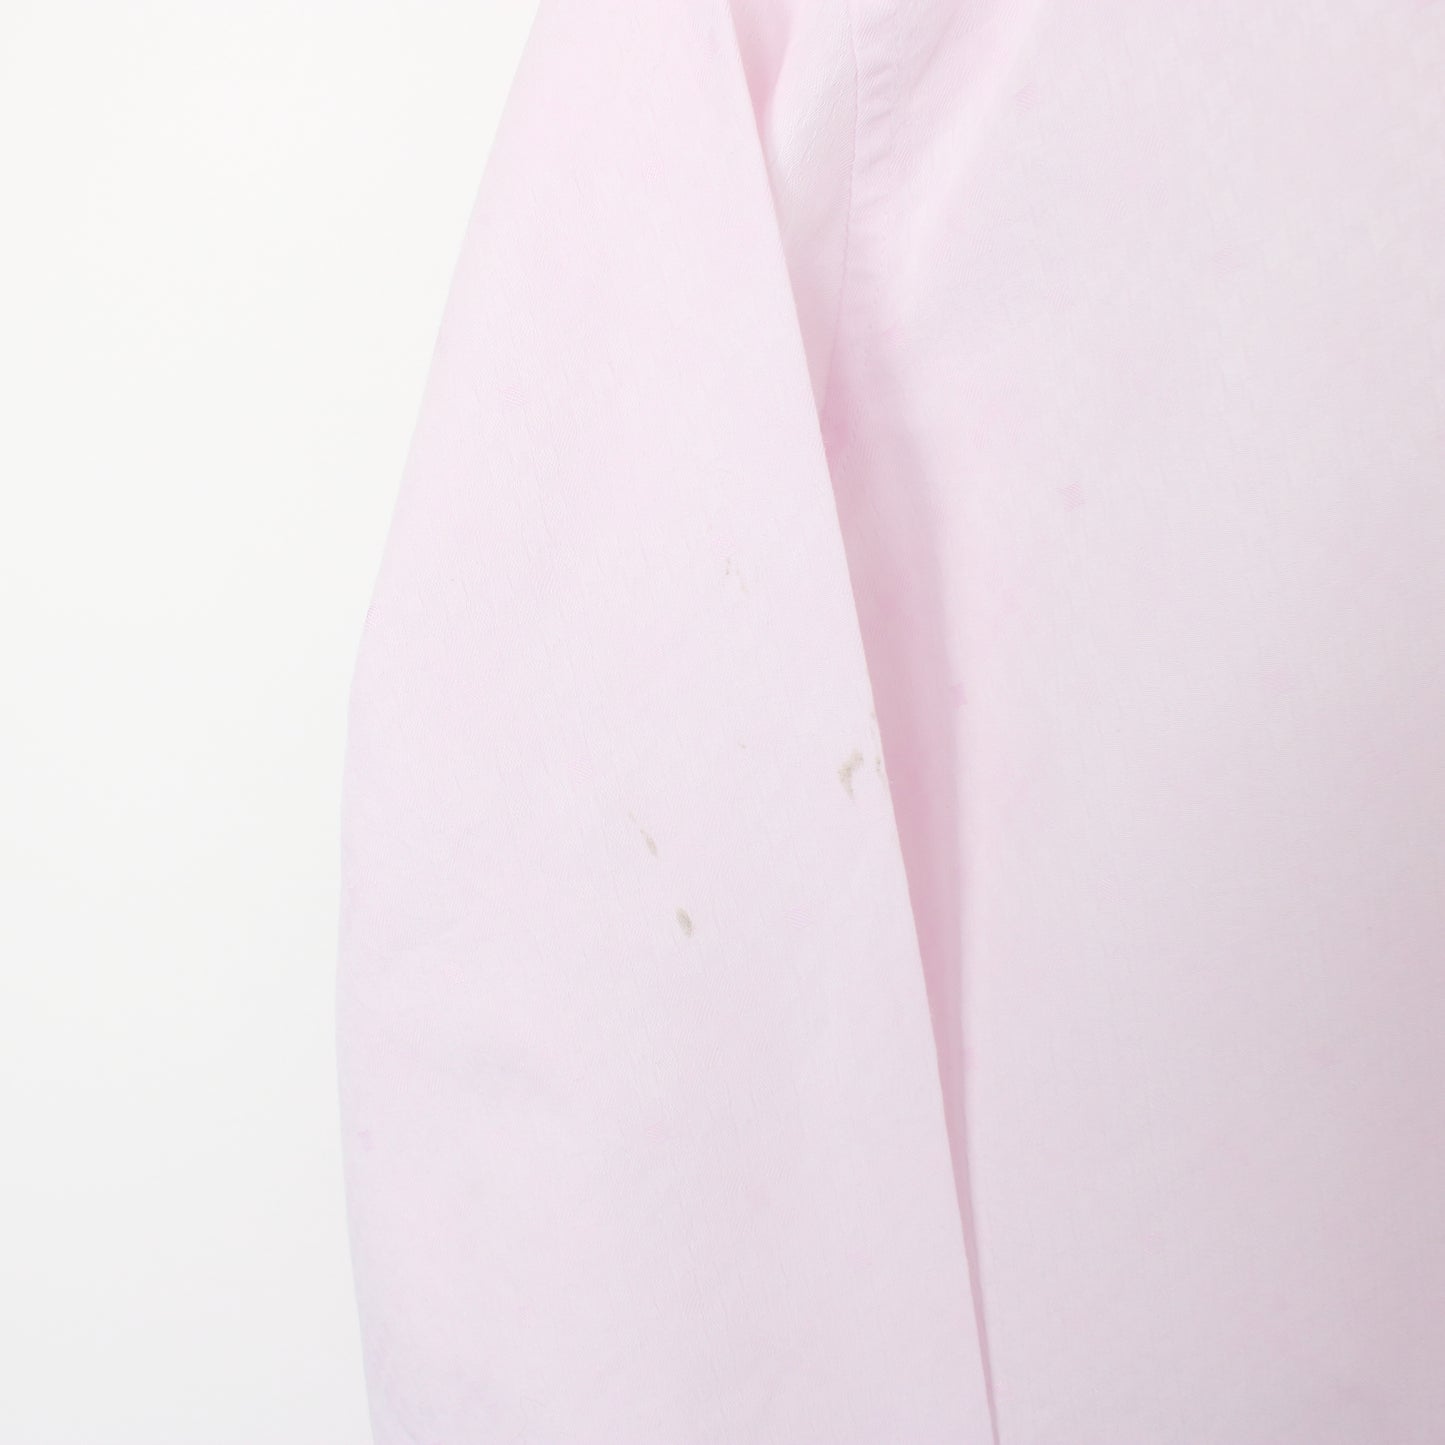 Vintage Aquascutum shirt in pink. Best fits L